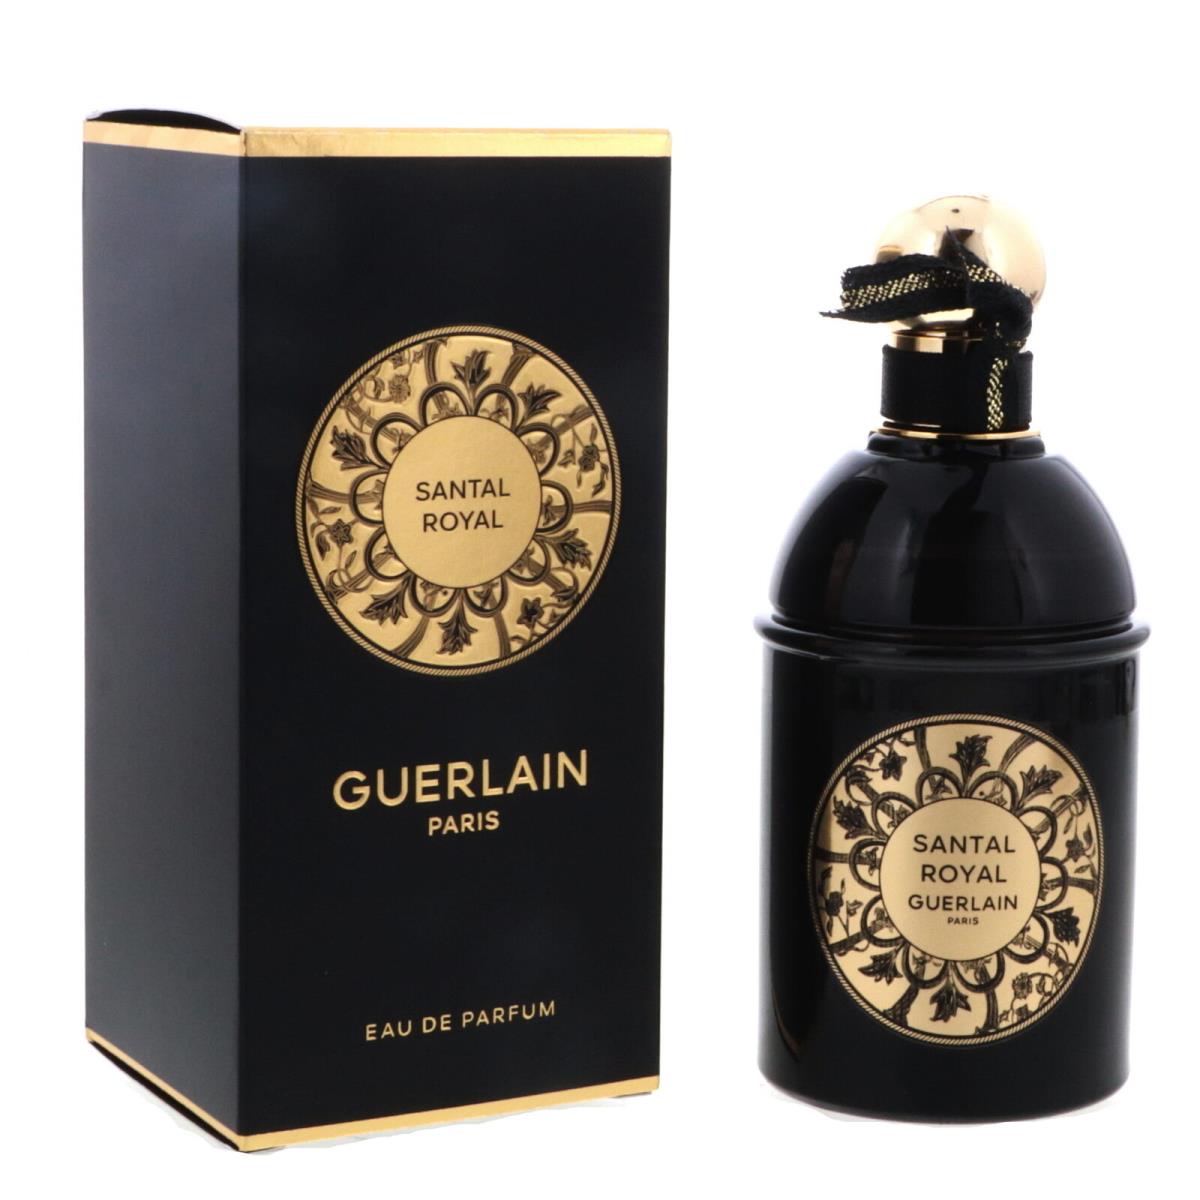 Guerlain Santal Royal Eau de Parfum 4.2 oz